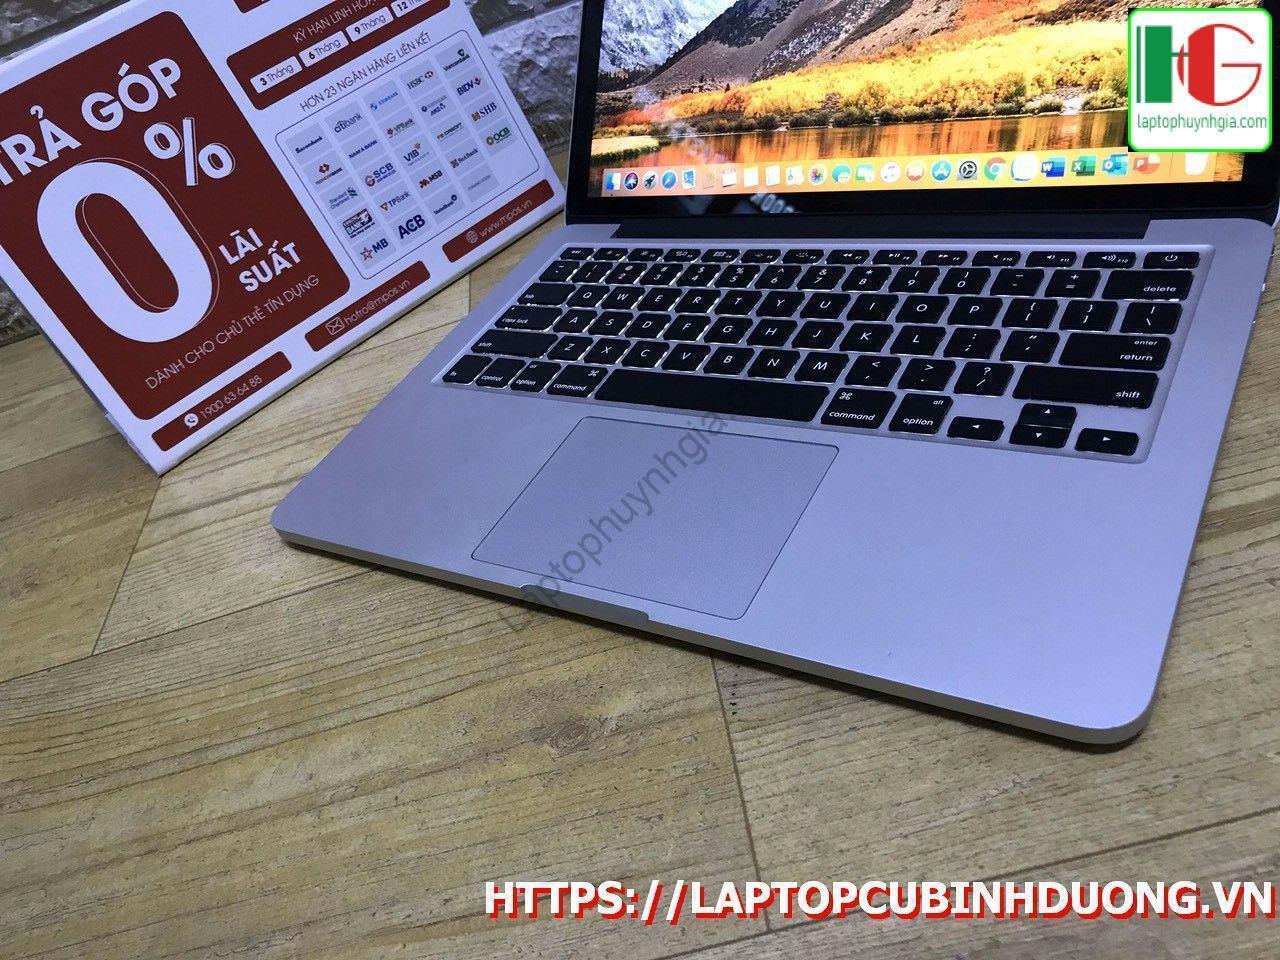 Laptop Macbook Pro 20150i55 Ram8g Ssd 128g Laptopcubinhduong.vn 3 Copy [kích Thước Gốc] Result